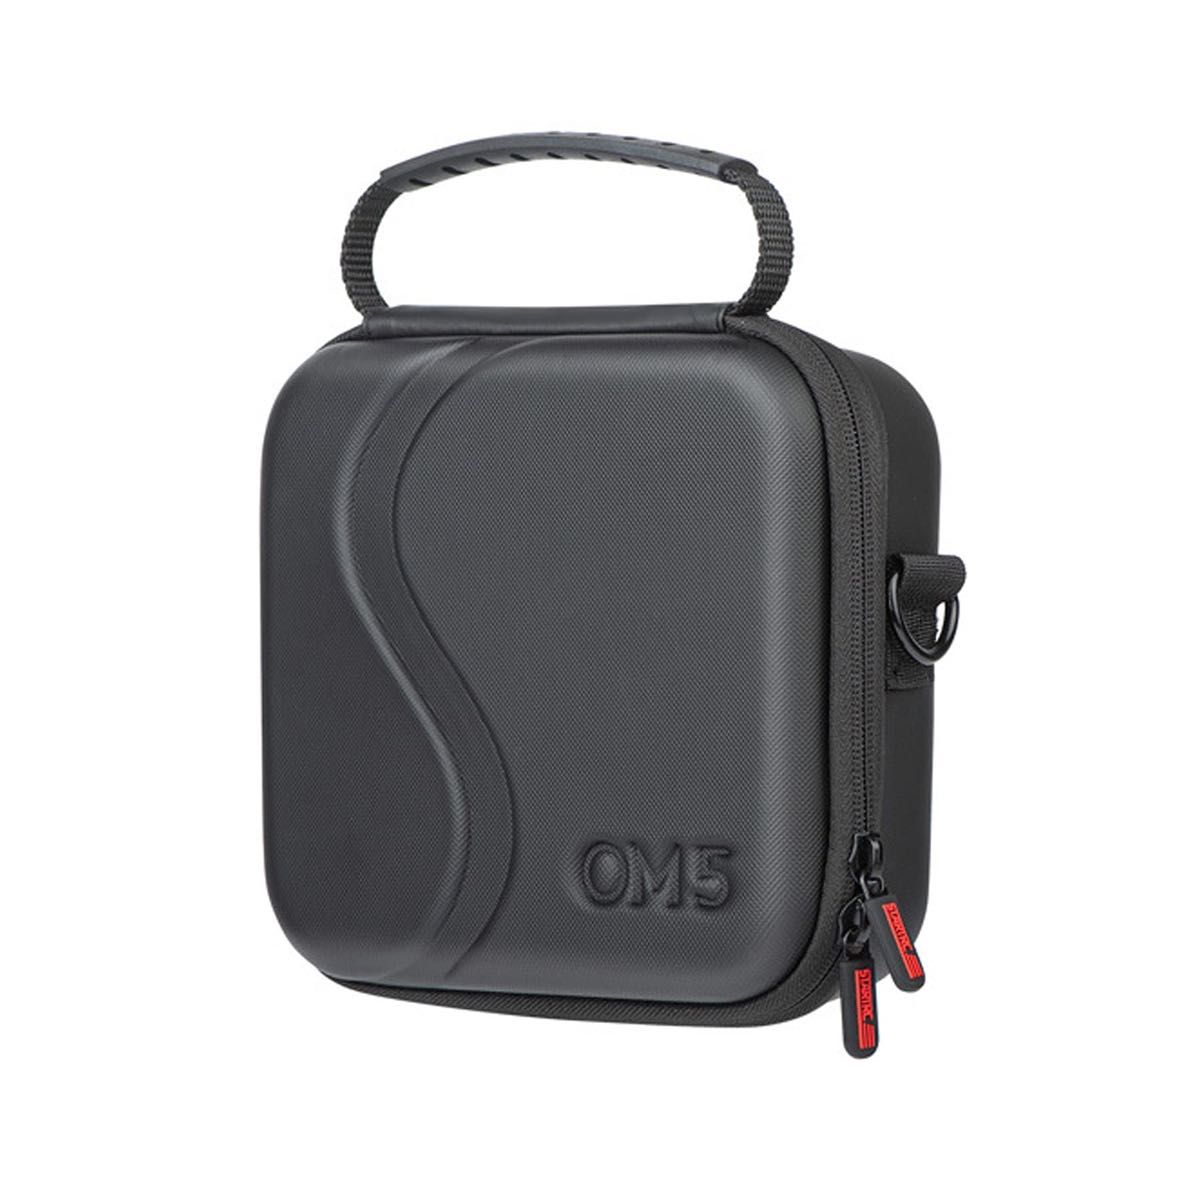  OM5 ケース 防水 ポータブル 収納 ショルダー バッグ トラベル アクションカメラ カメラバッグ